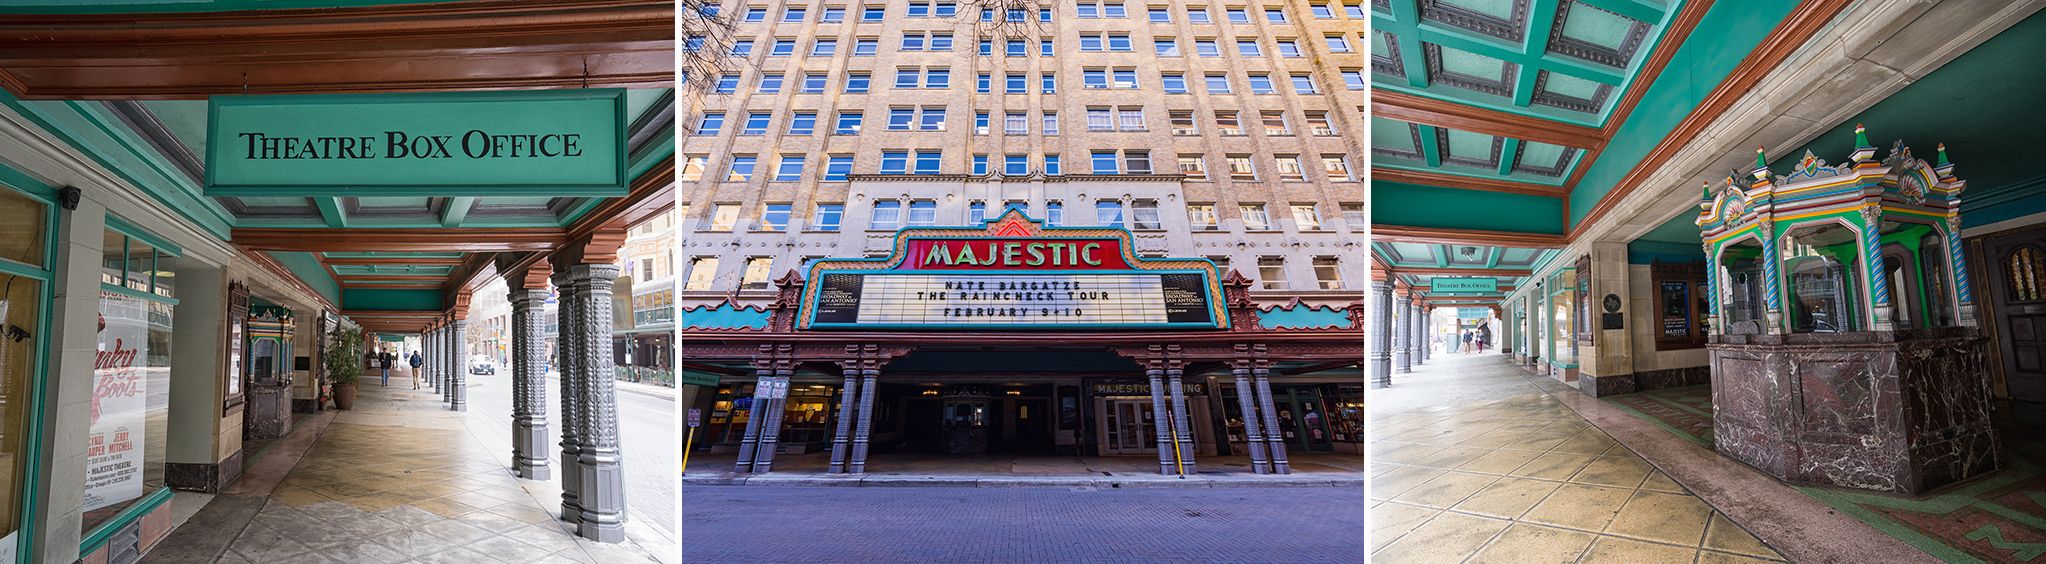 Majestic Theatre in San Antonio